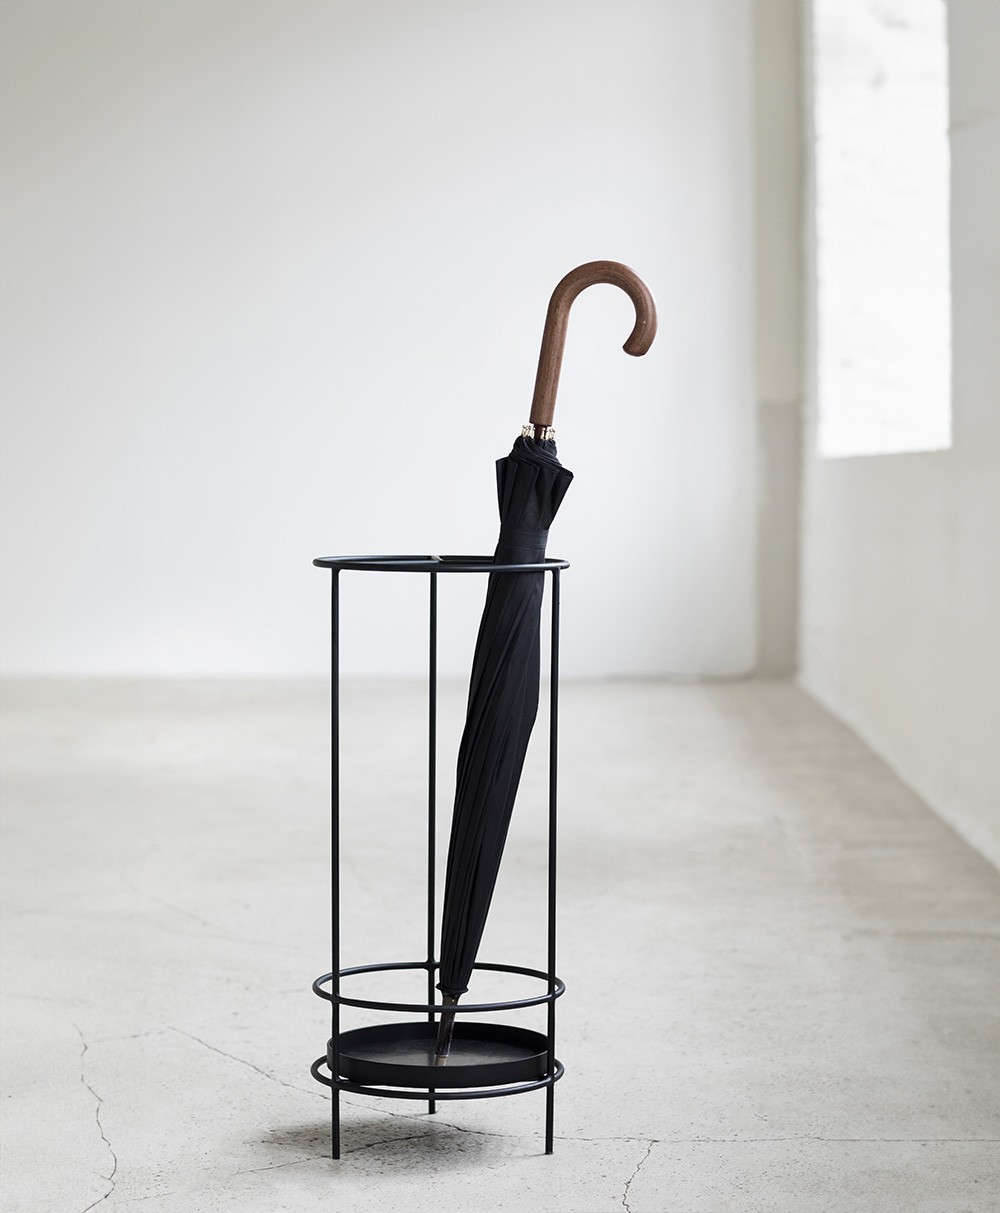 Hier abgebildet der Schirmständer Ella Antonio Sciortino mit Serax - RAUM concept store